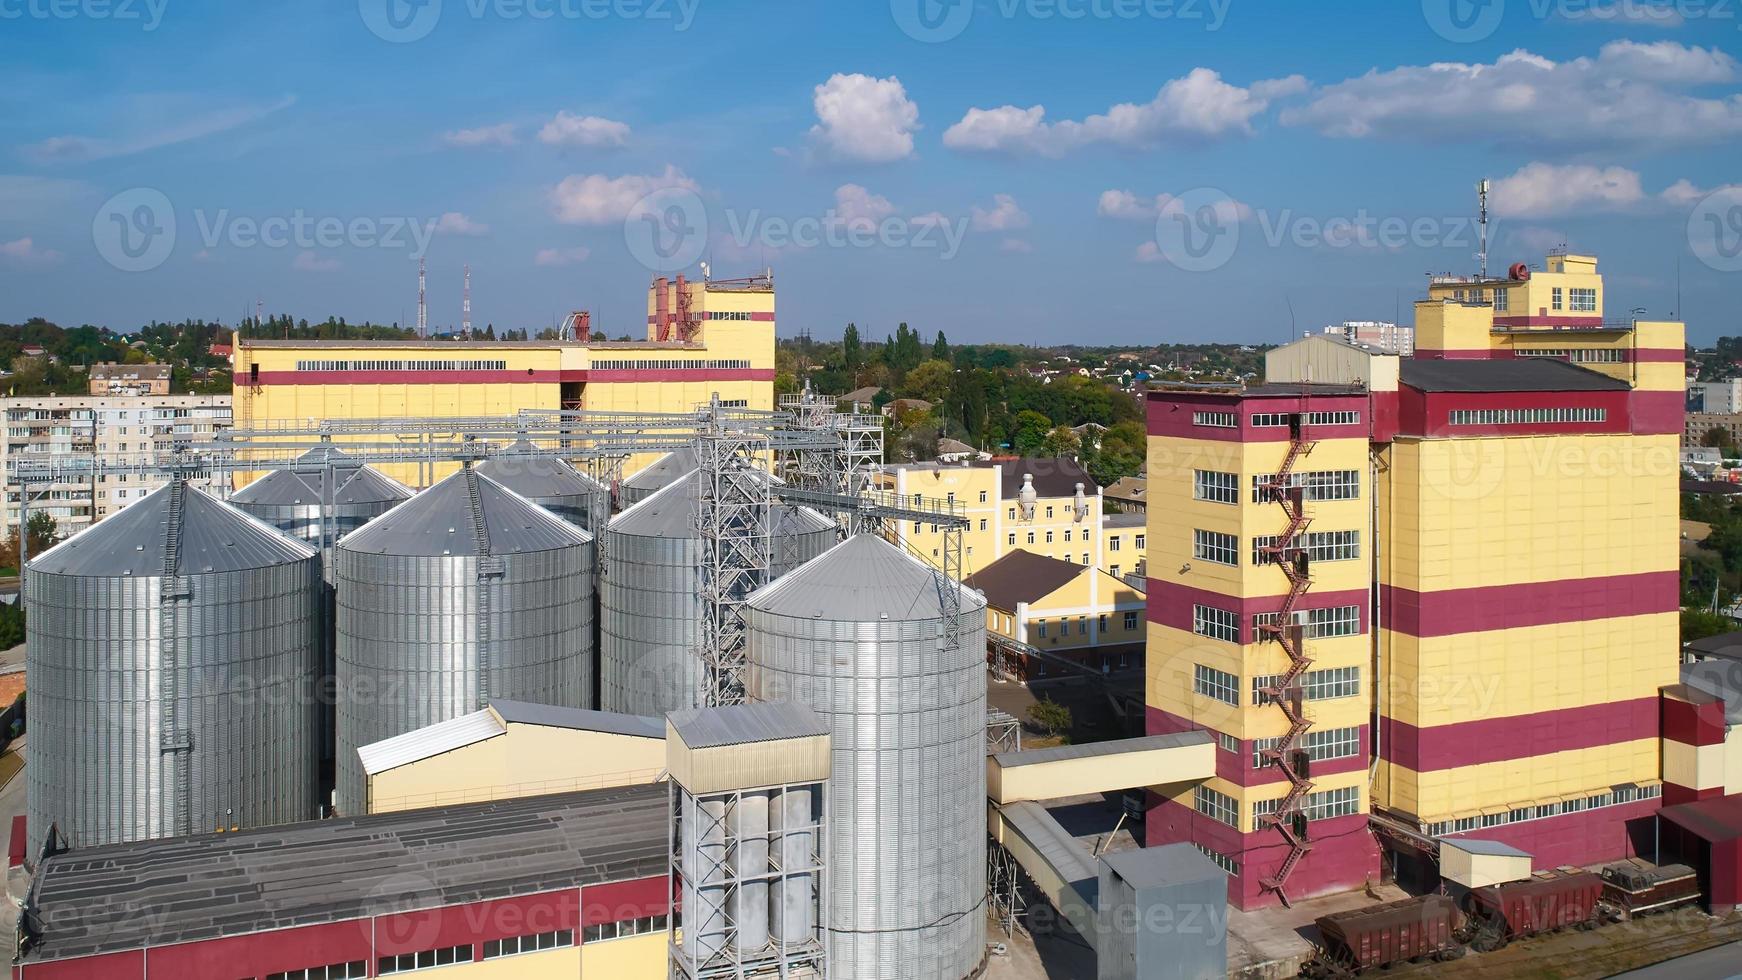 jordbrukssilo. lagring och torkning av spannmål, vete, majs, soja, mot den blå himlen med moln. foto